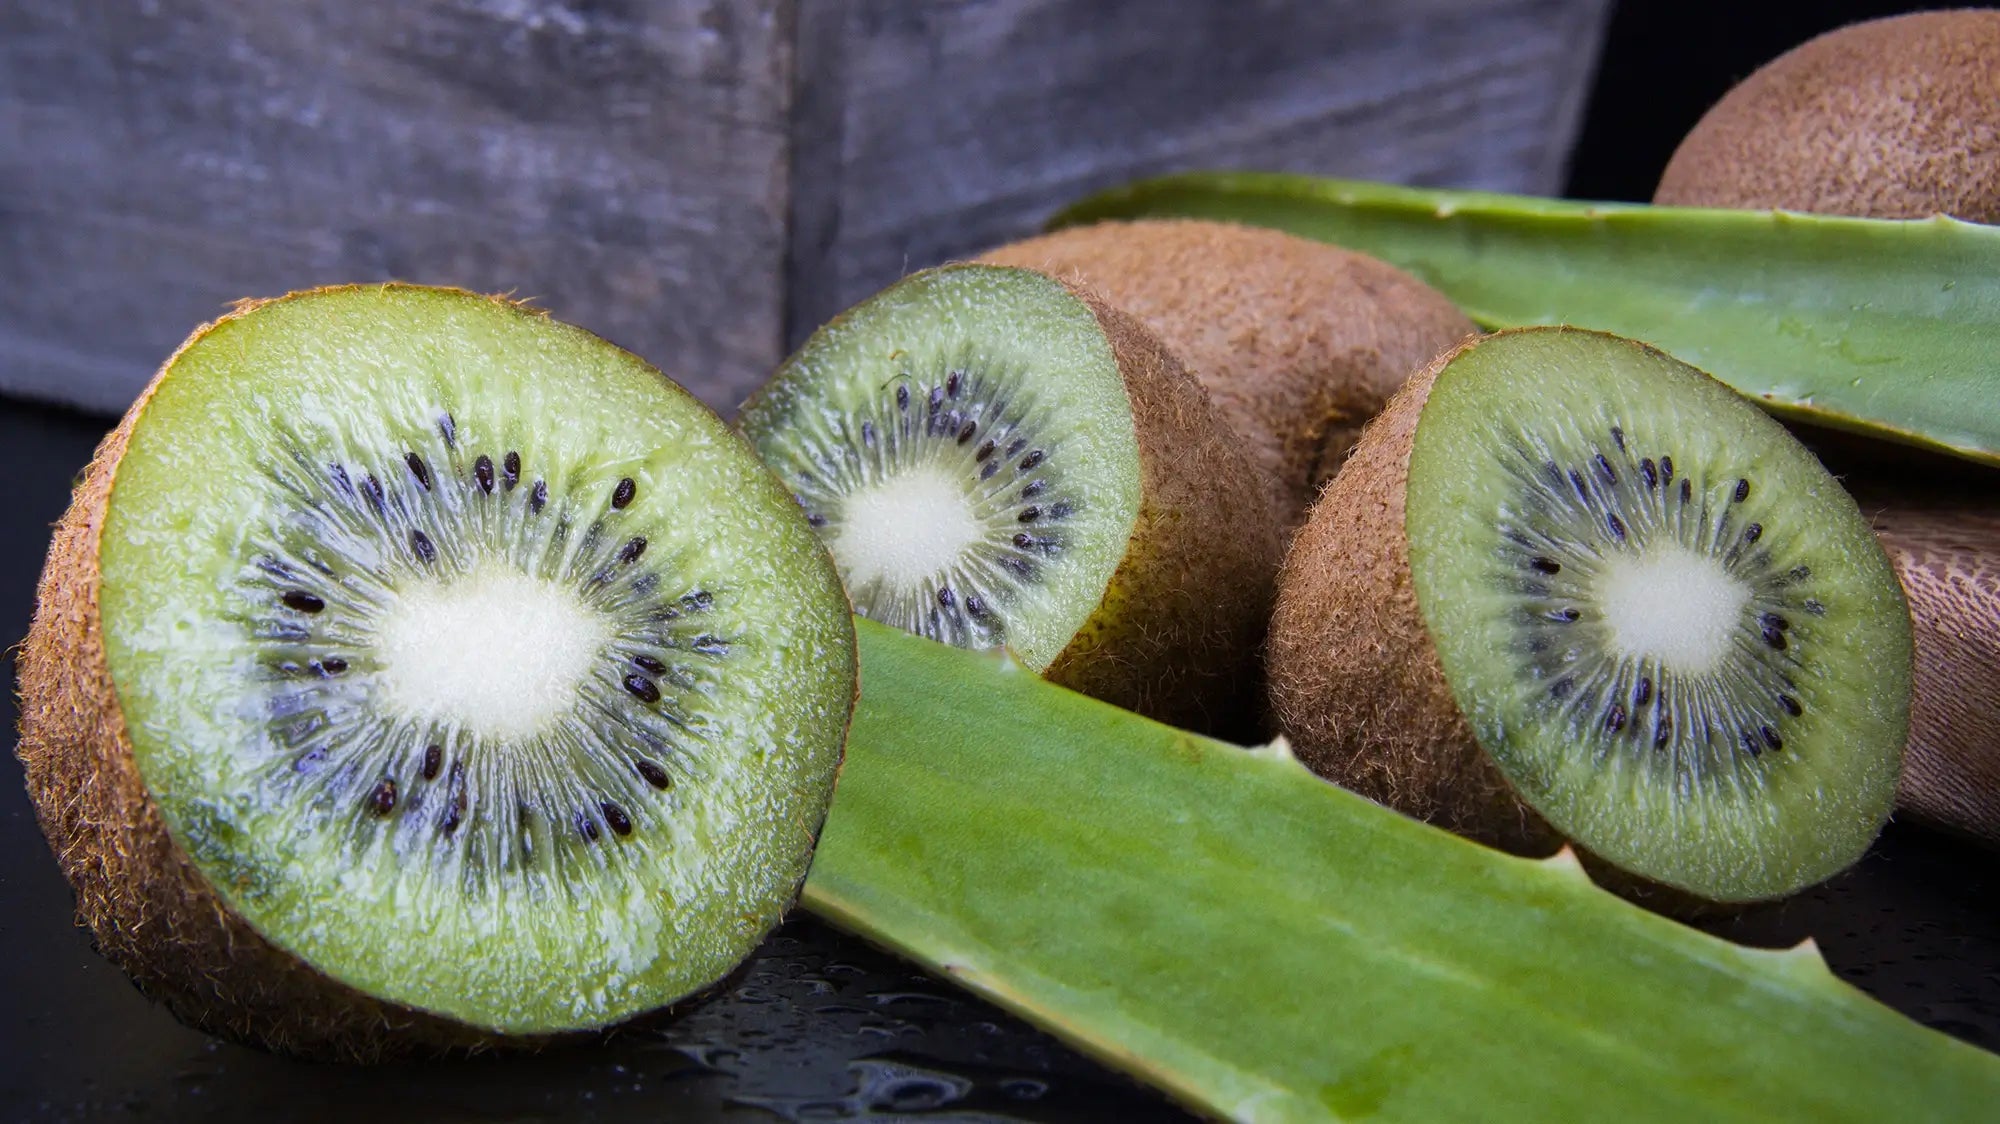 kiwi and aloe vera for healthy skin